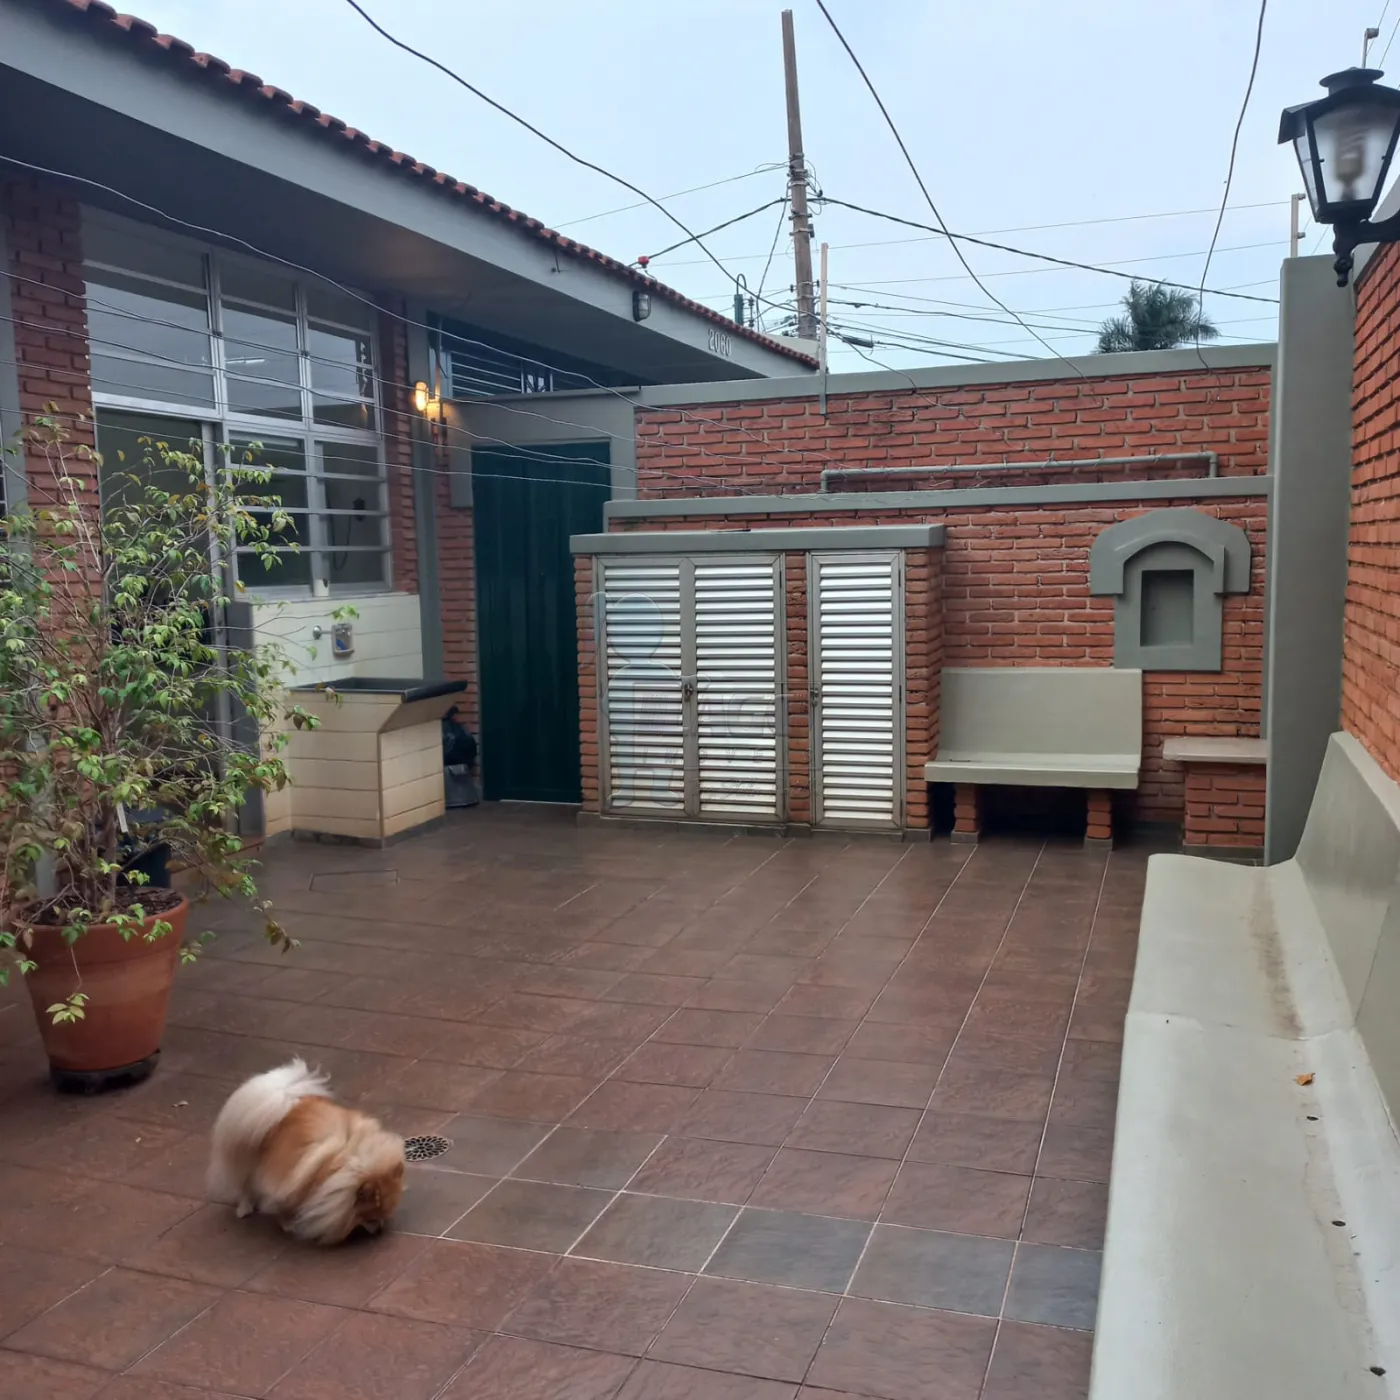 Comprar Casas / Padrão em Ribeirão Preto R$ 800.000,00 - Foto 16